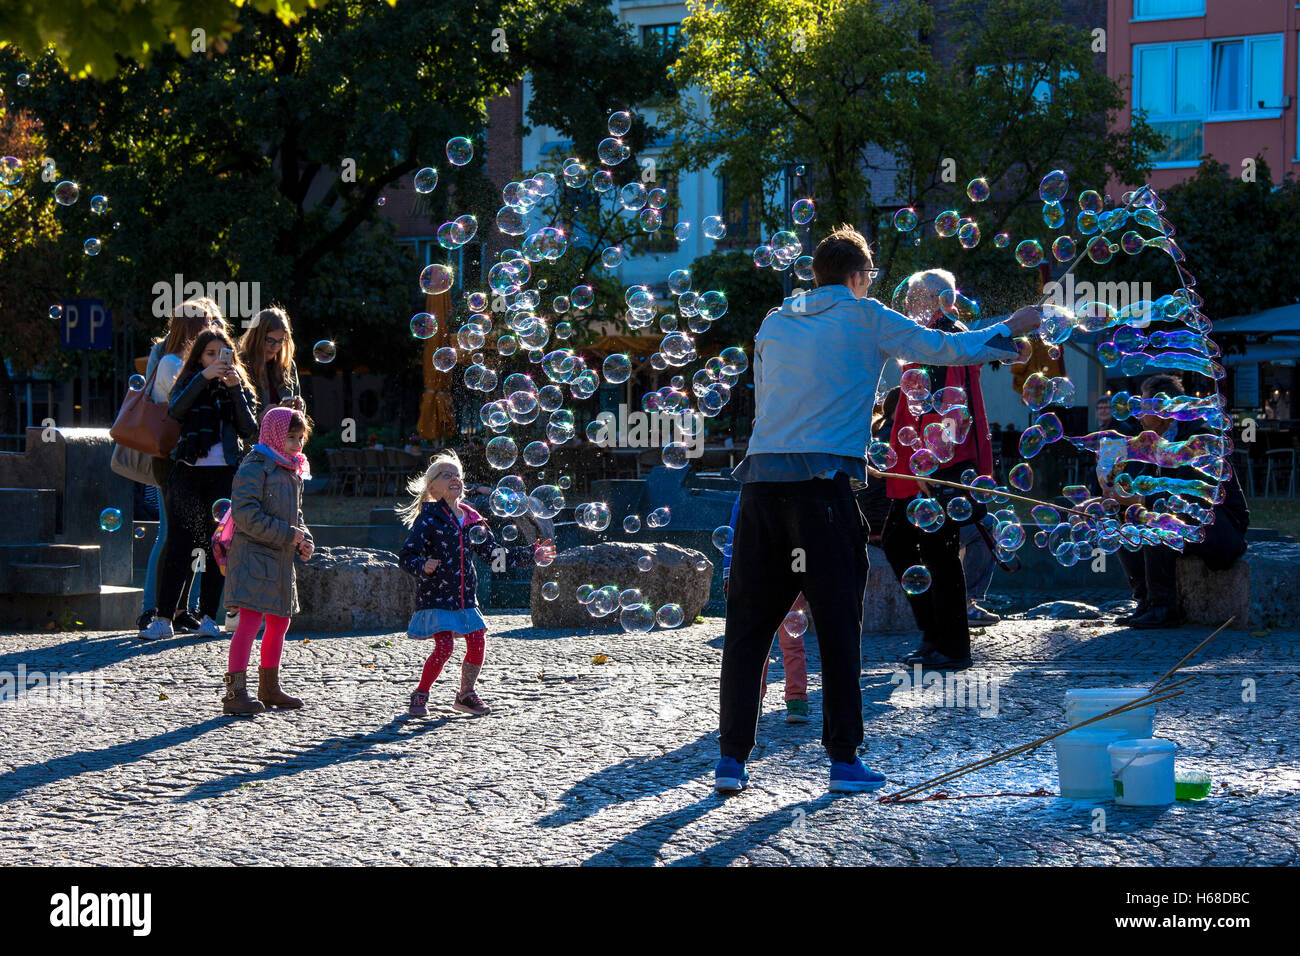 Germania, Colonia, uomo fa bolle di sapone sul Reno giardino nella parte vecchia della citta'. Foto Stock